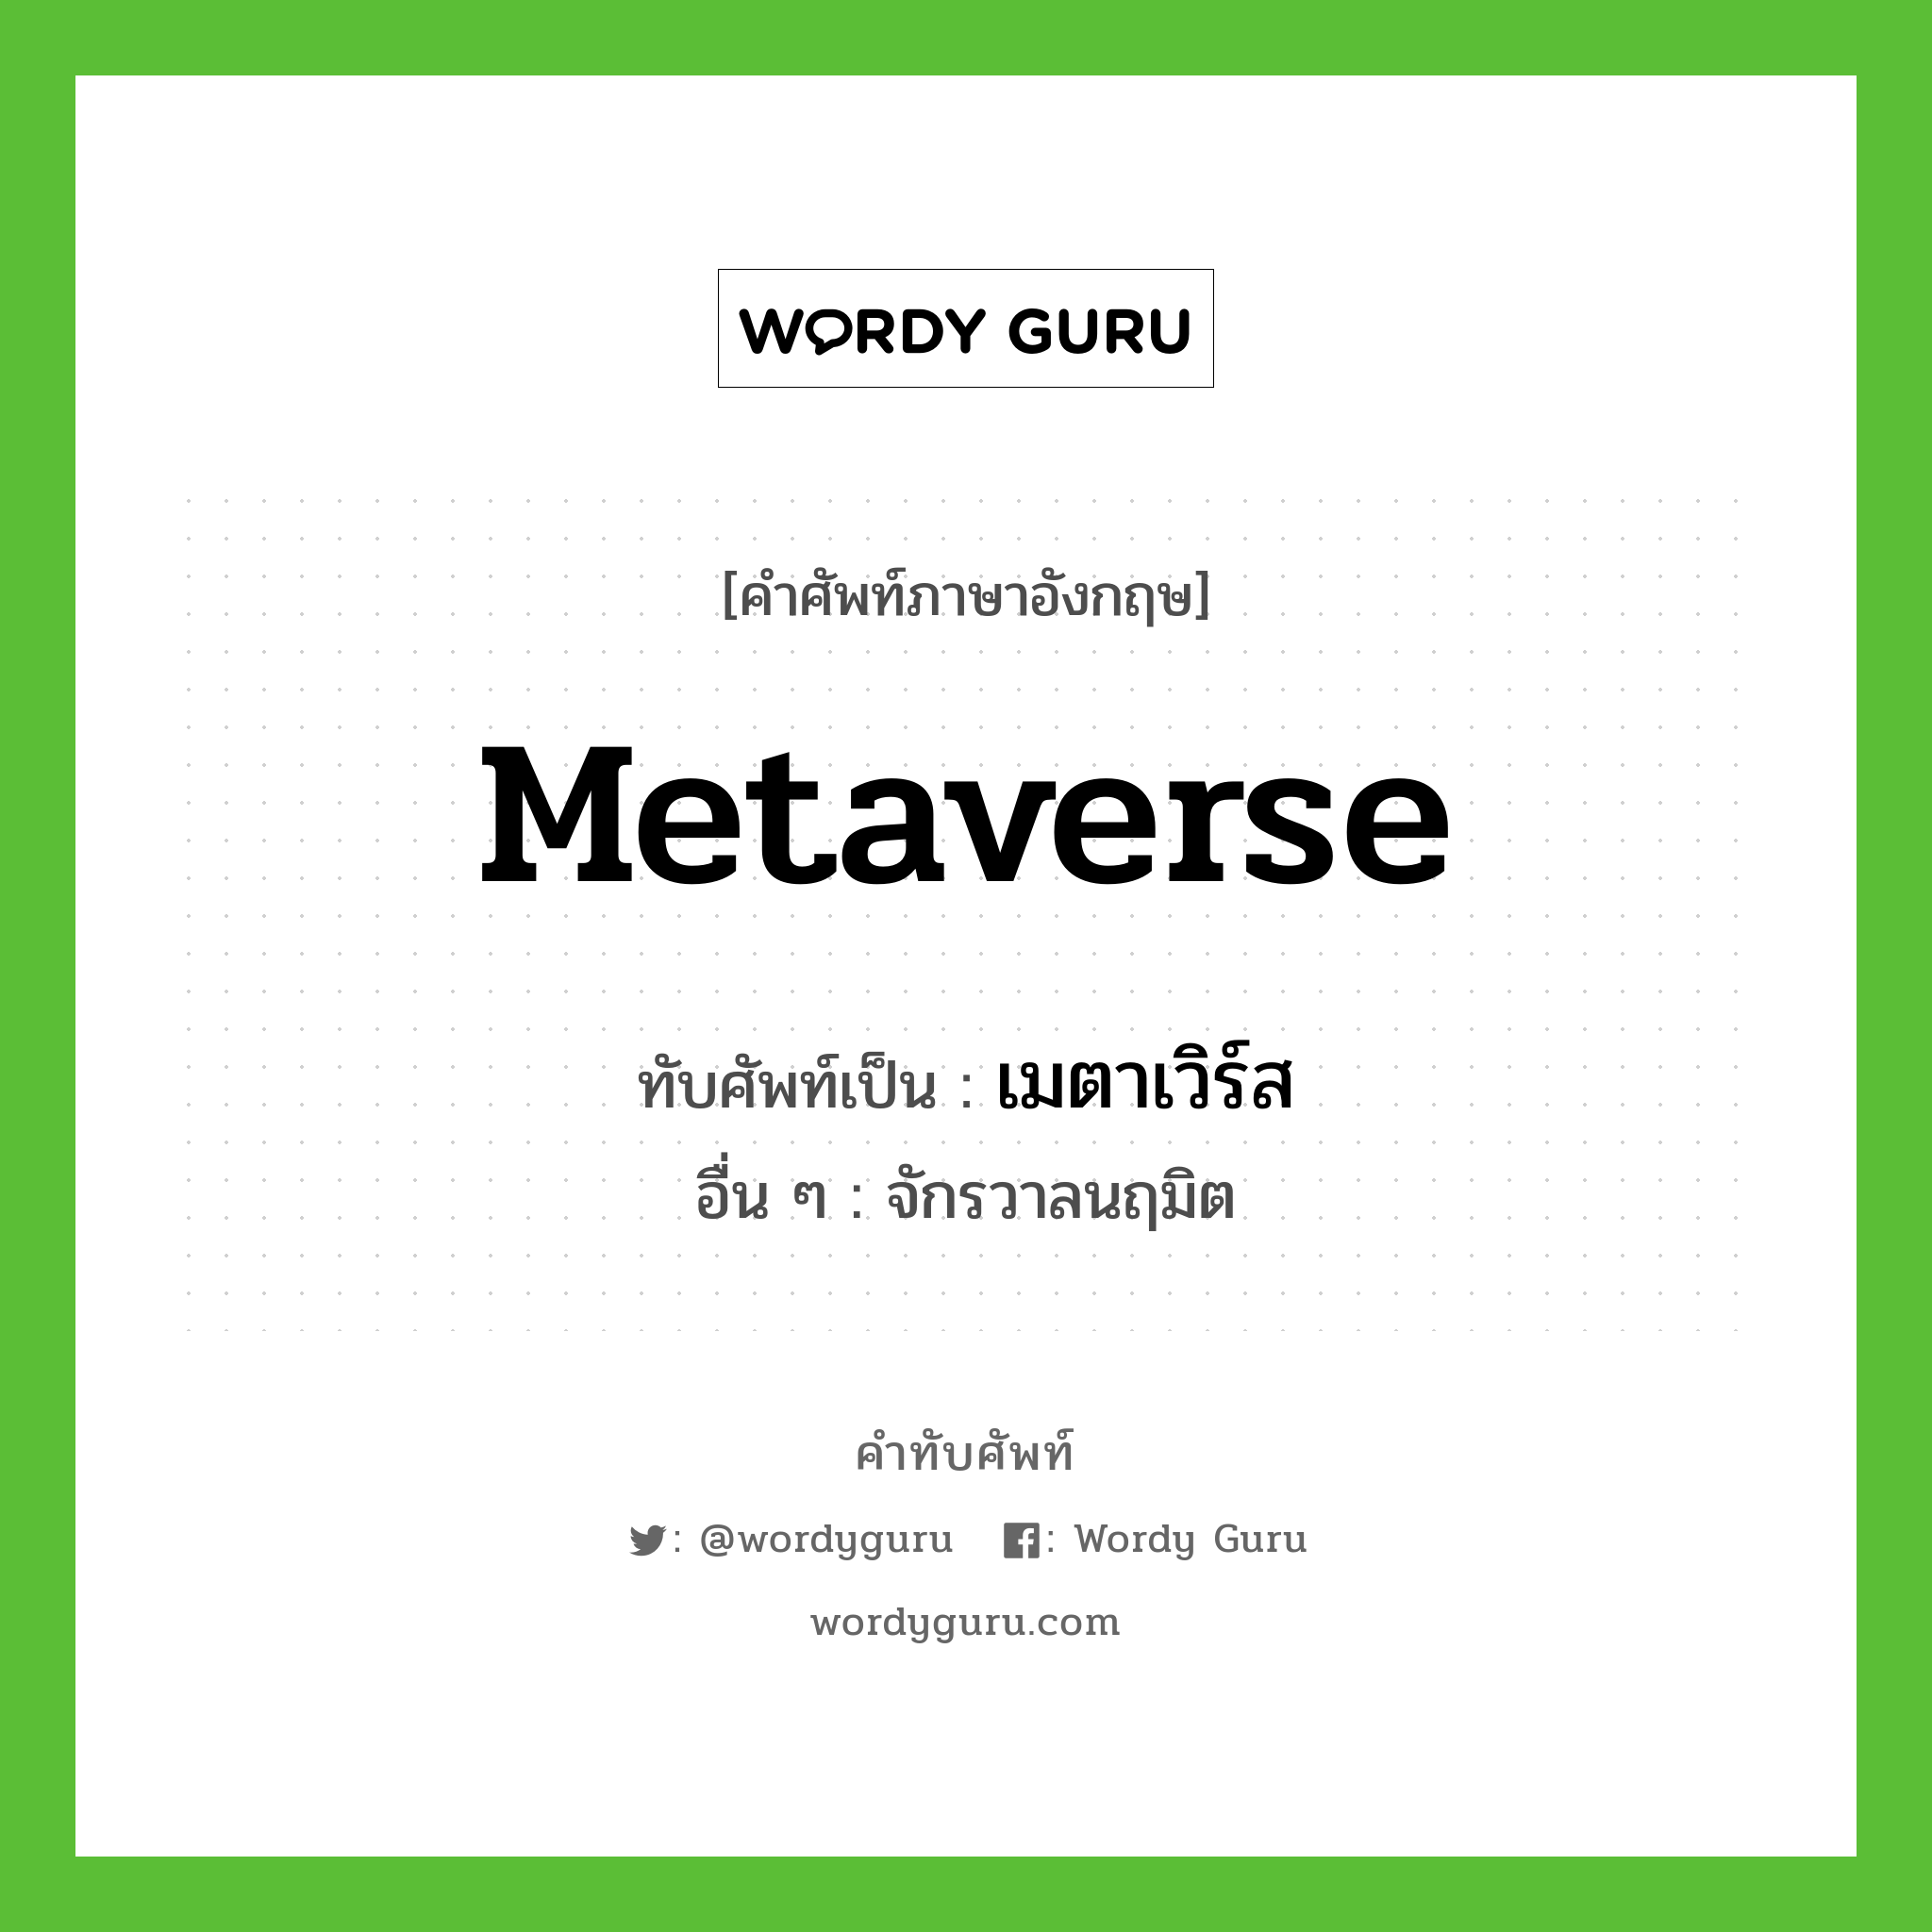 Metaverse เขียนเป็นคำไทยว่าอะไร?, คำศัพท์ภาษาอังกฤษ Metaverse ทับศัพท์เป็น เมตาเวิร์ส อื่น ๆ จักรวาลนฤมิต